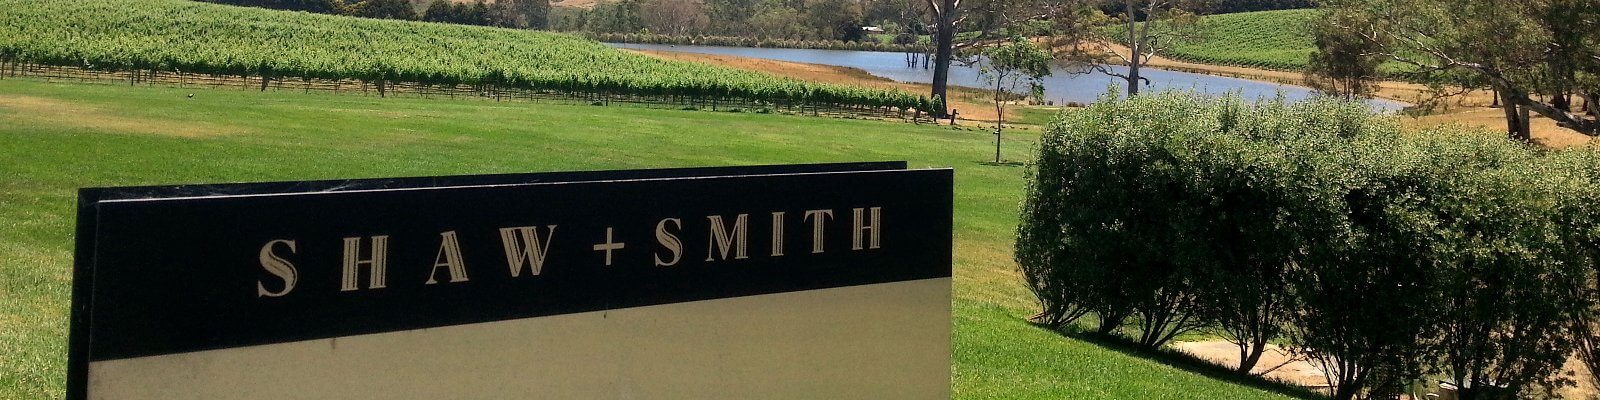 Nuestra colección de Smith + Shaw - Encuéntrelo en Onshore Cellars su proveedor de vinos para yates